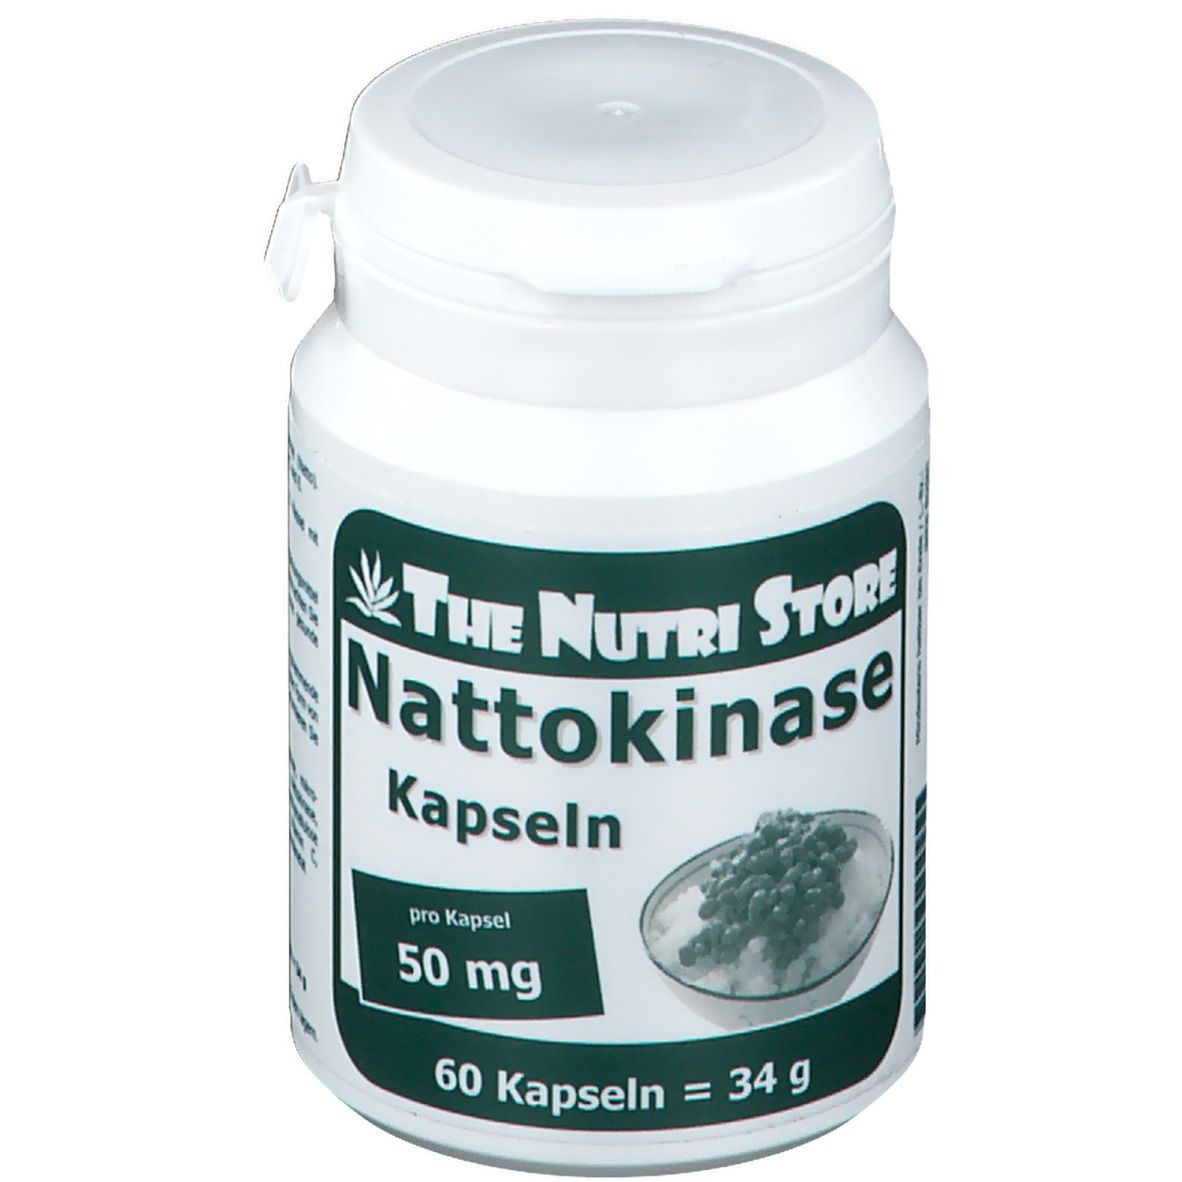 The Nutri Store Nattokinase 50 mg